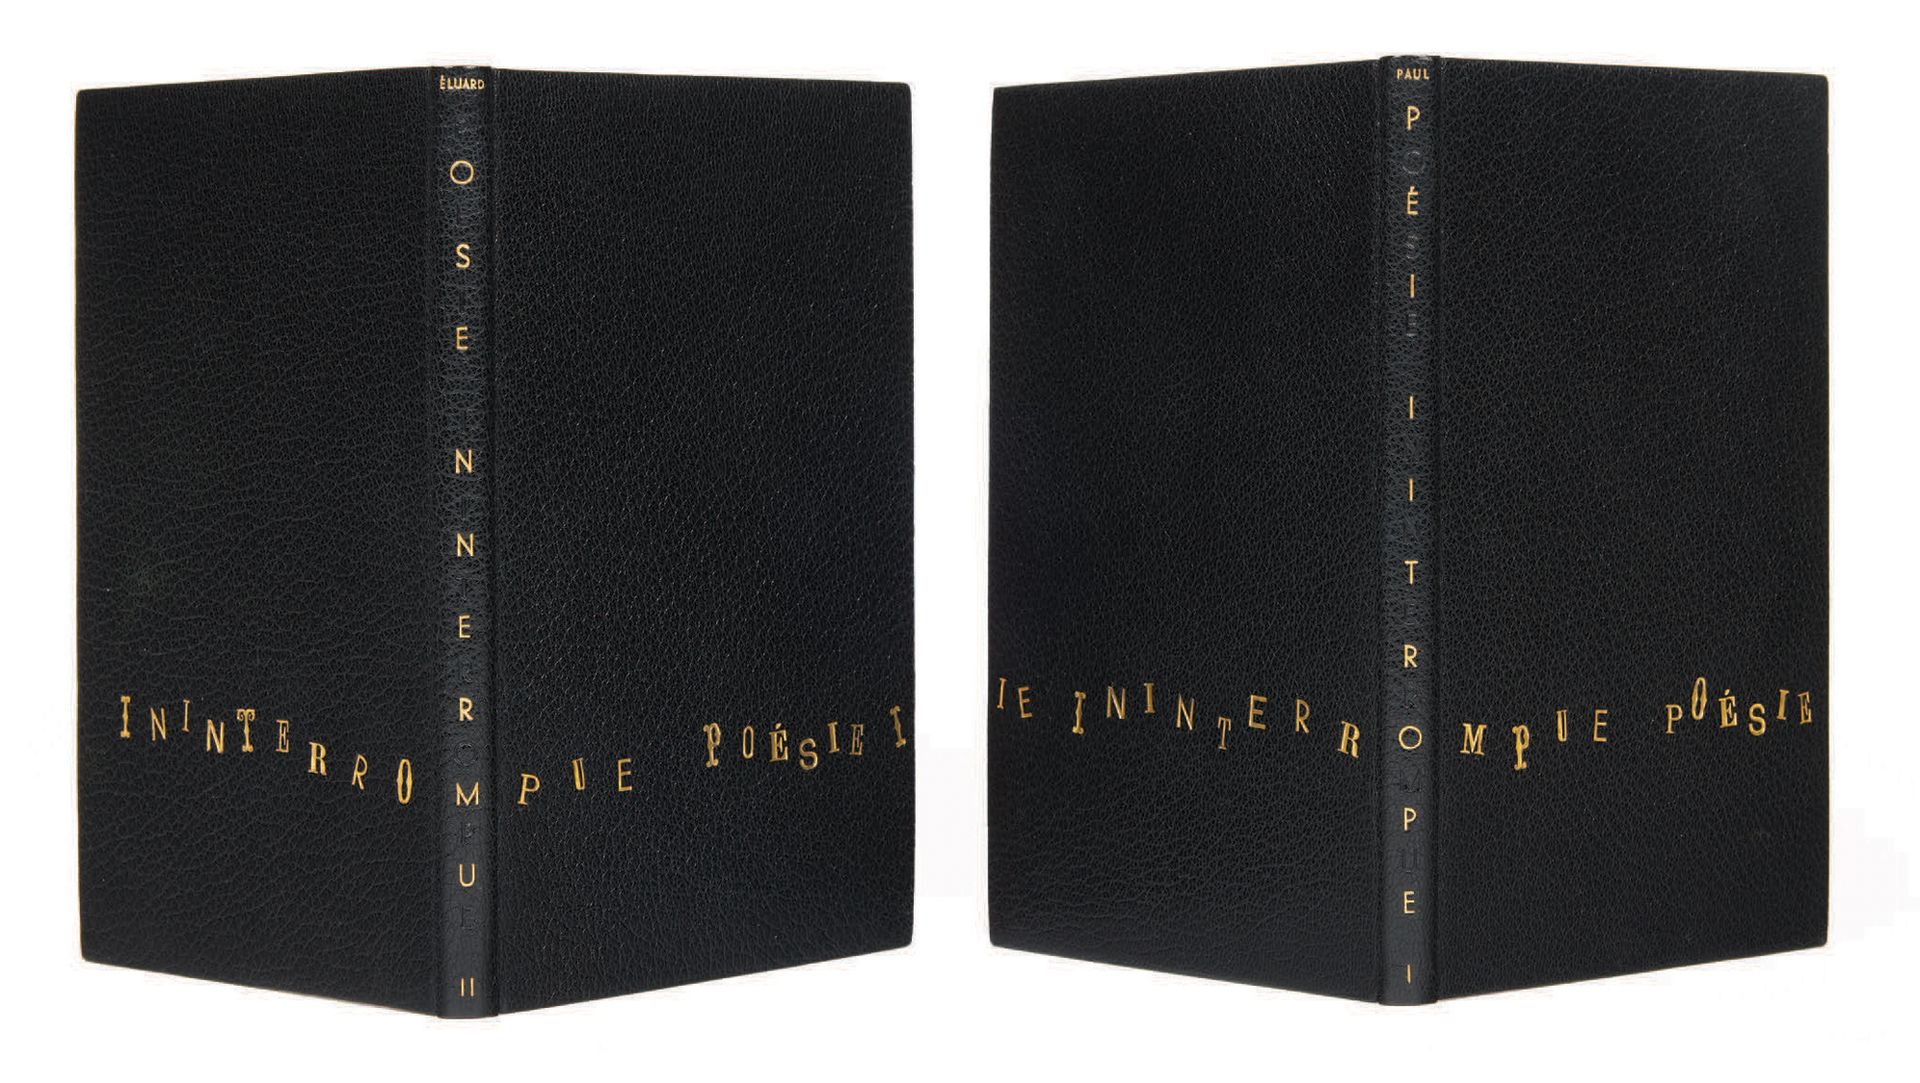 Paul Eluard. Poésie ininterrompue I und II. Paris, Gallimard, 1946-1953.
2 Bände&hellip;